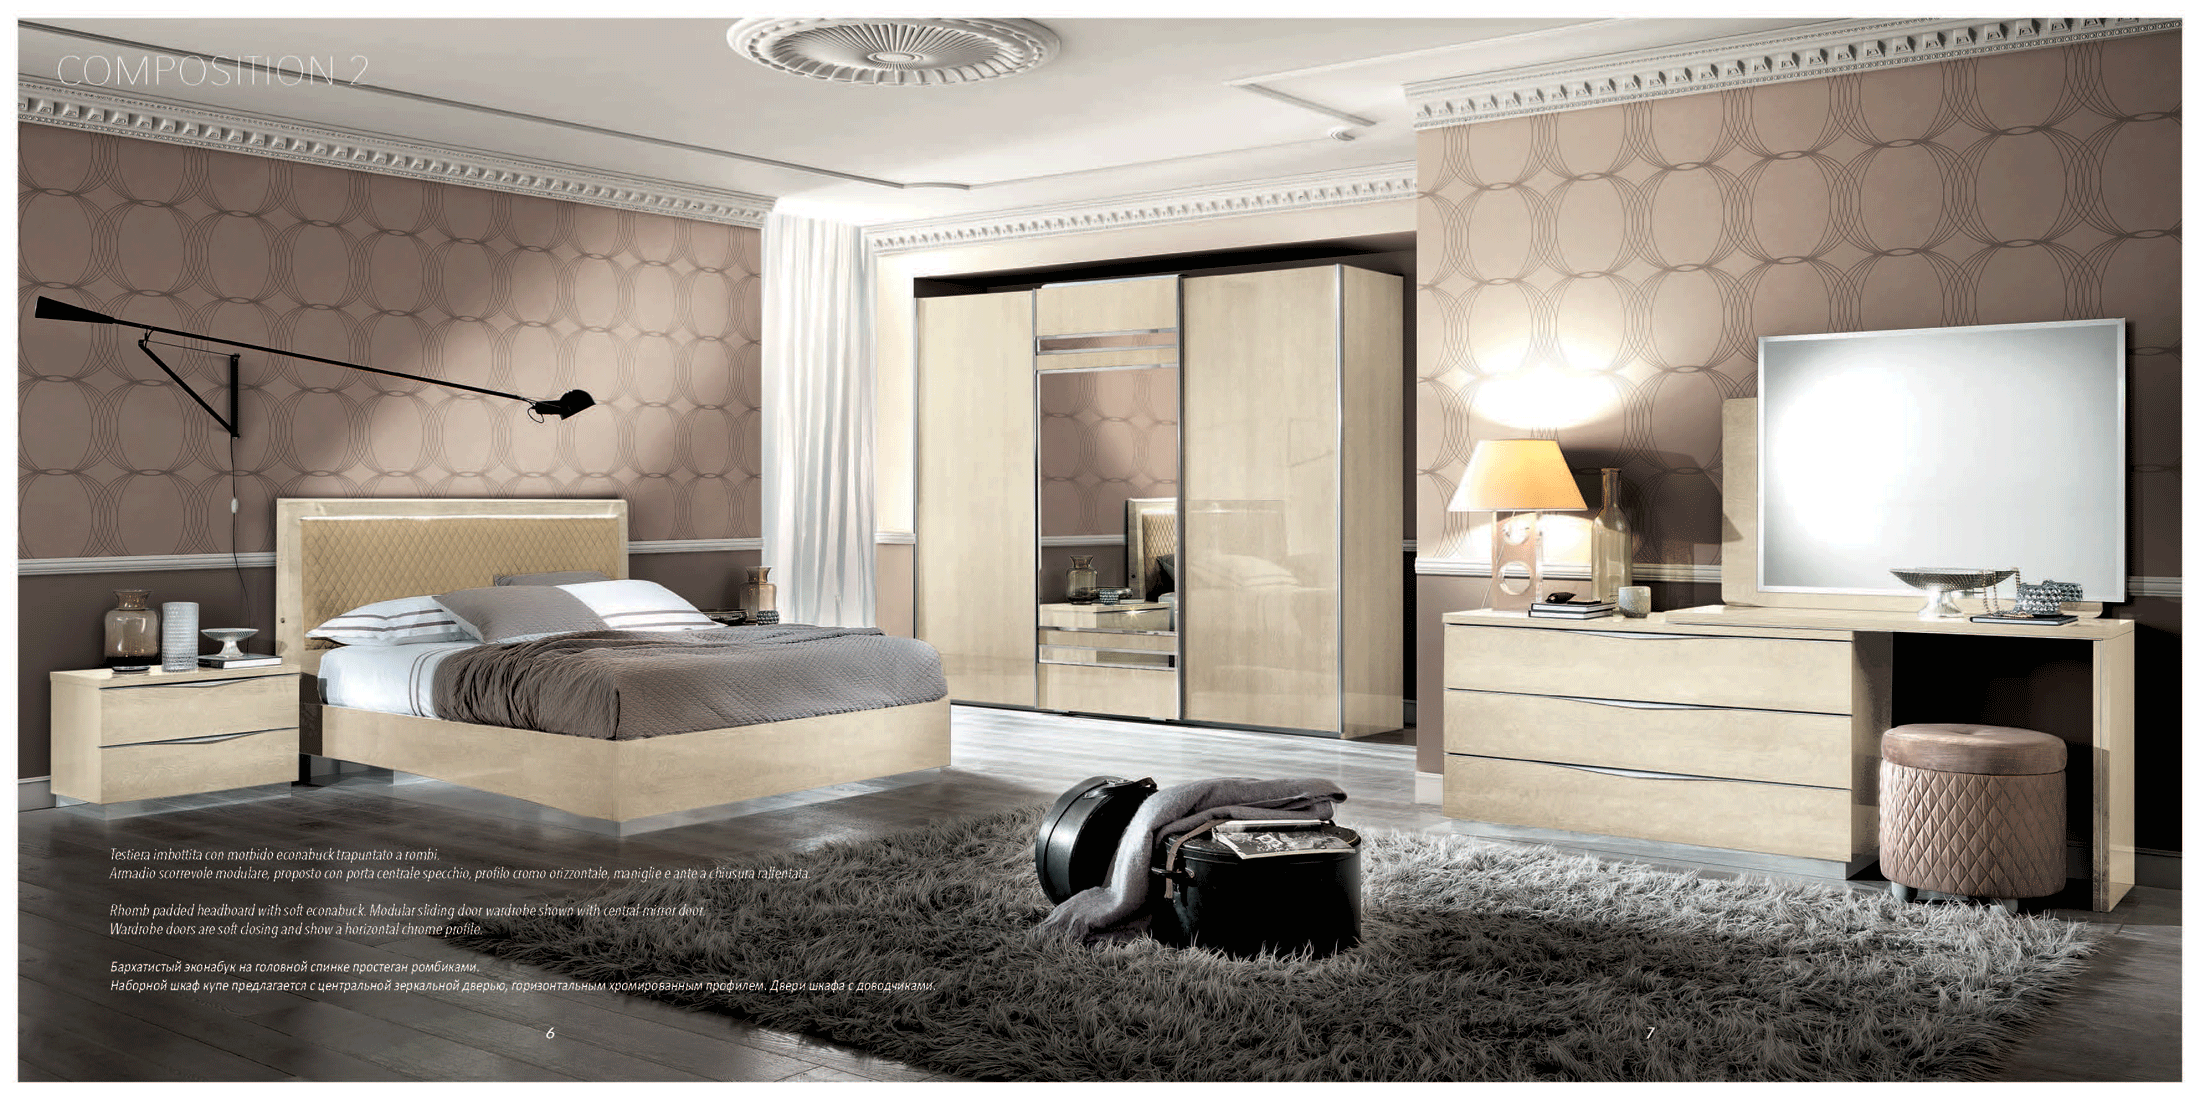 Bedroom Furniture Nightstands Platinum Additional Items IVORY BETULLIA SABBIA